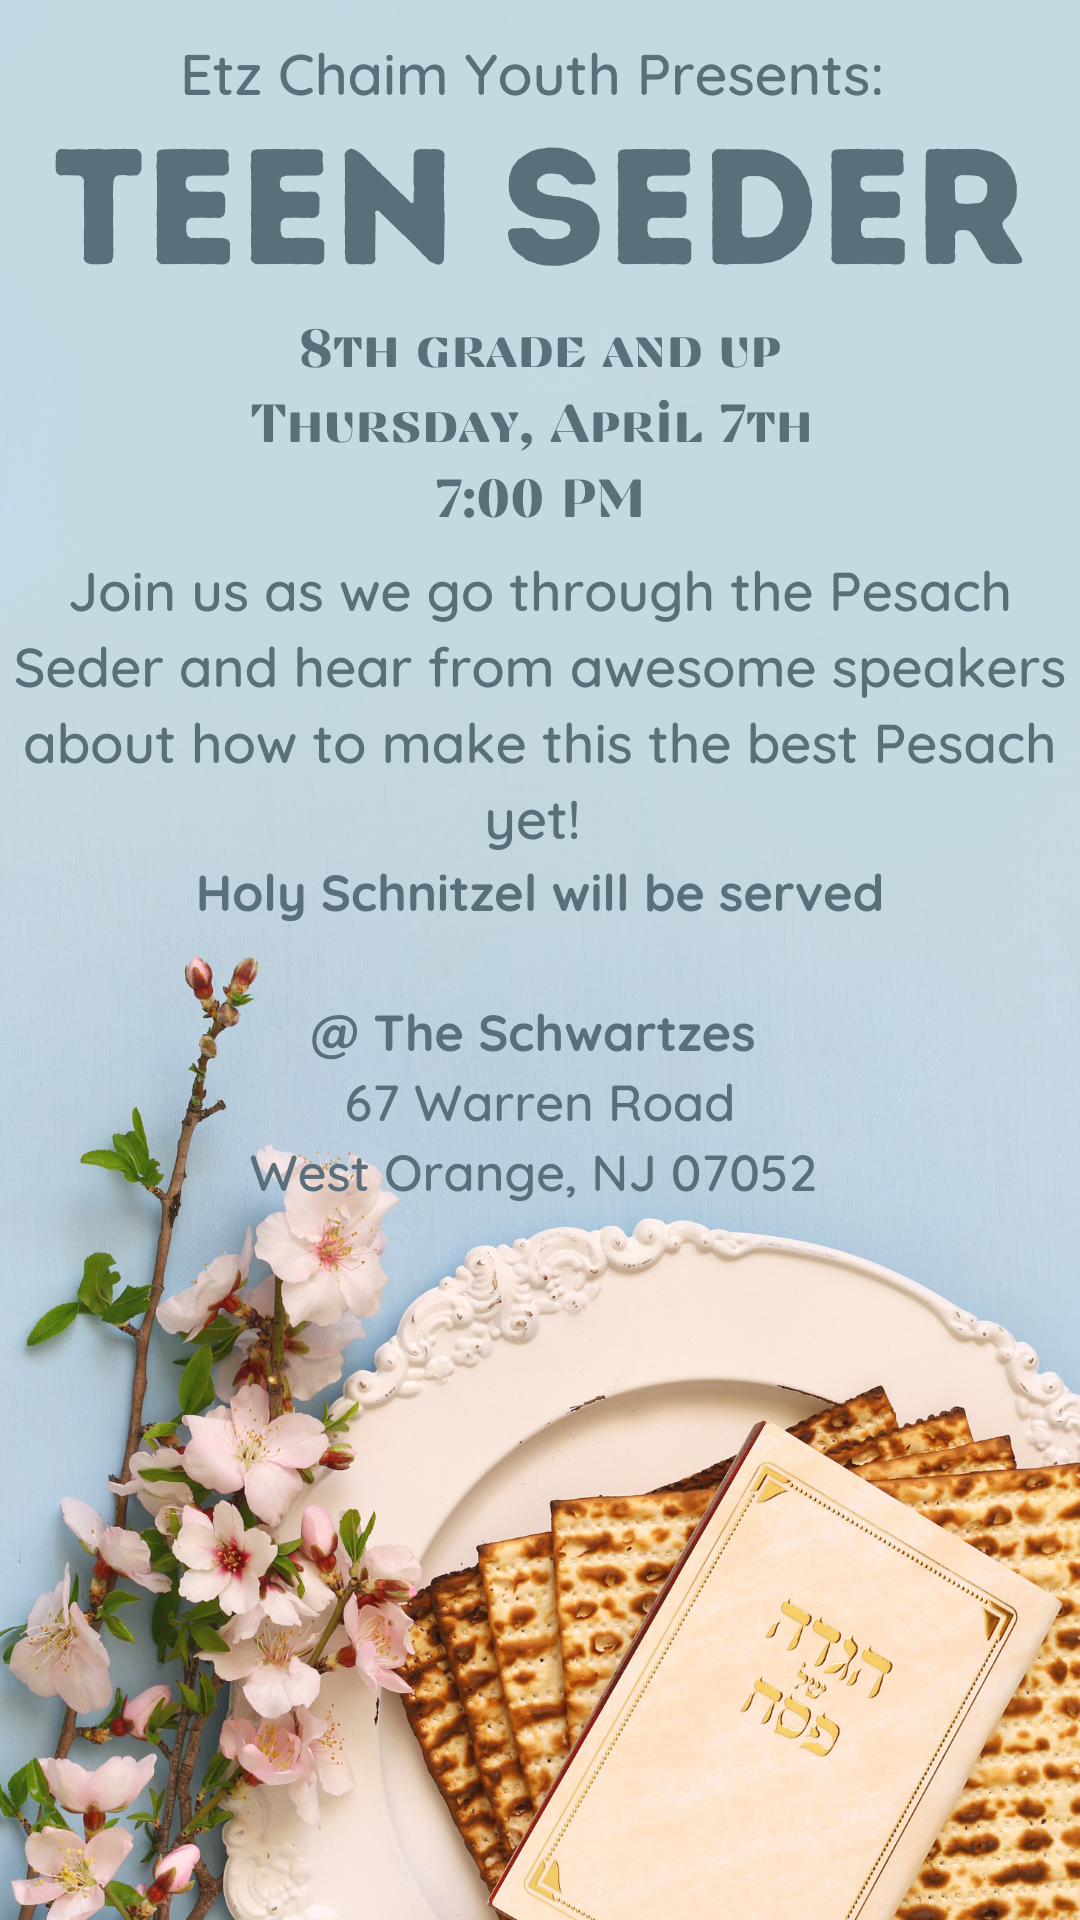 Youth: Teen Seder